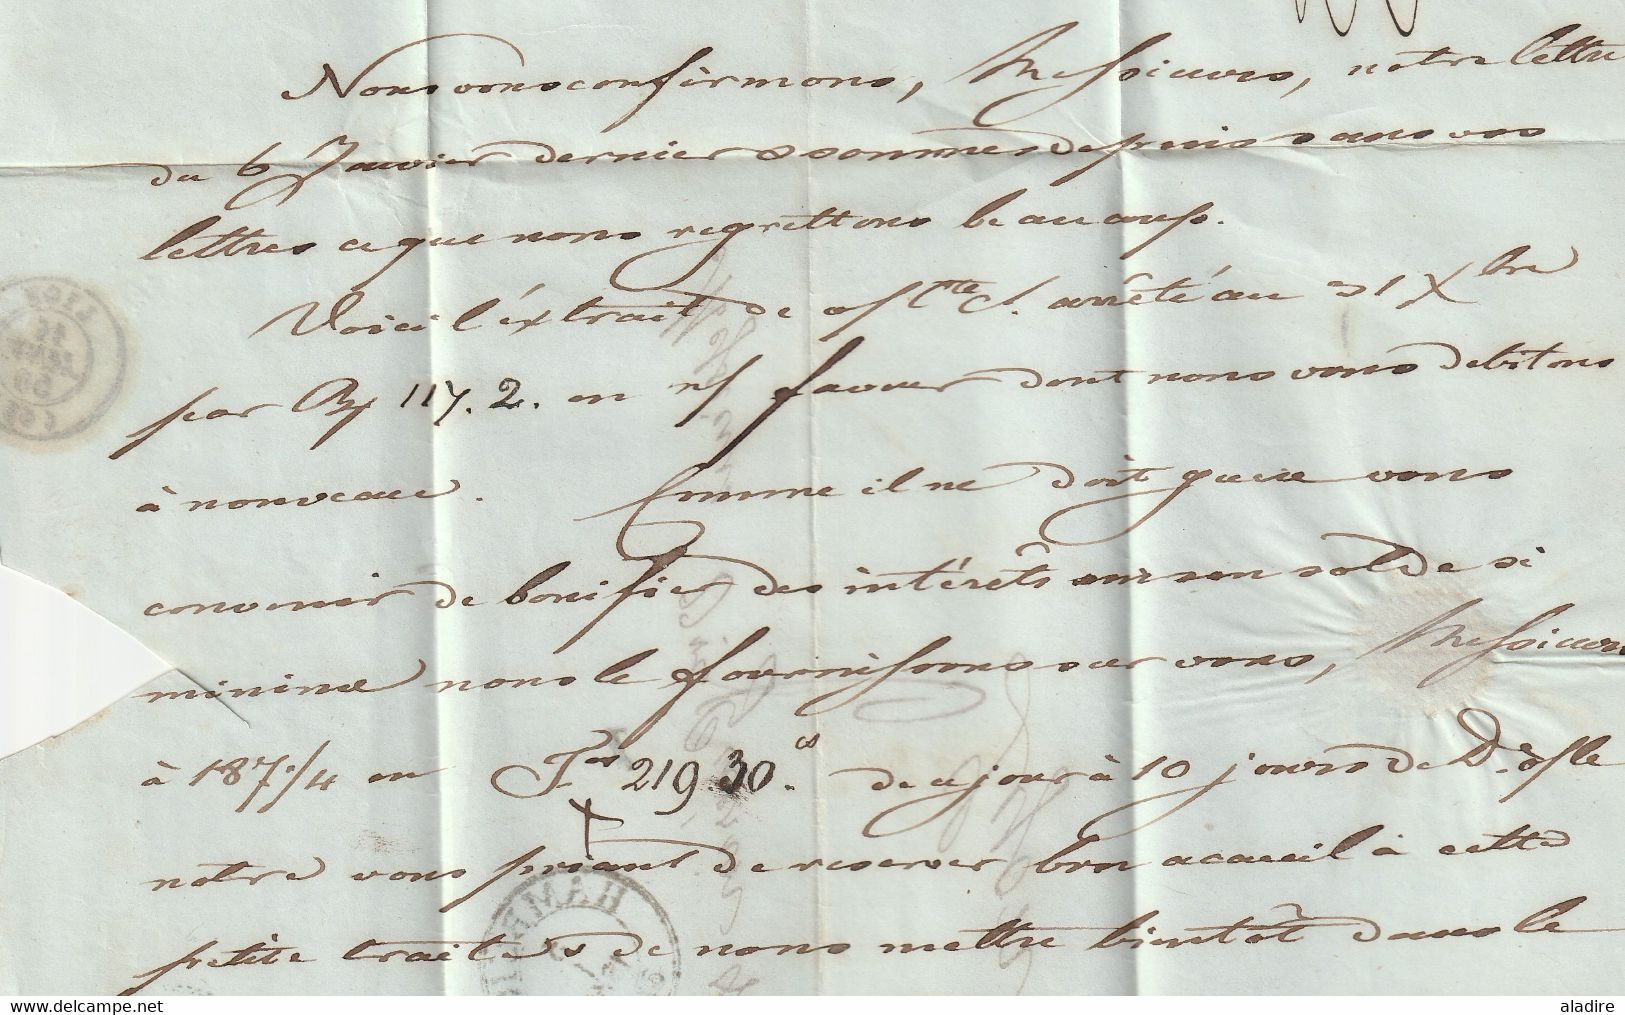 1850 - Lettre + imprimé pliés de HAMBURG vers LYON, France - entrée par STRASBOURG - taxe 6 - Cad arrivée